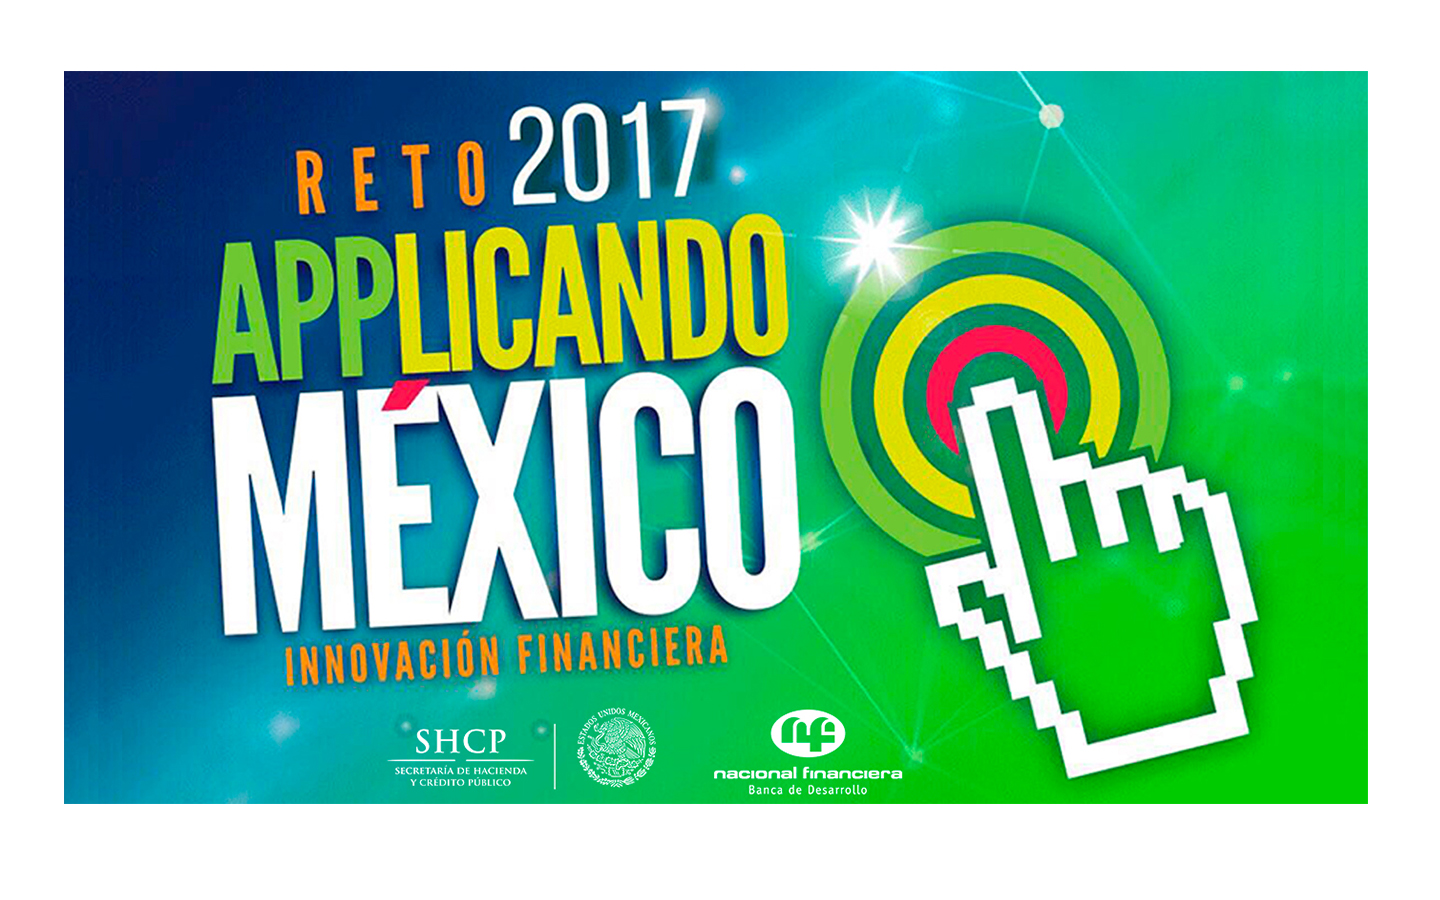 Applicando México 2017